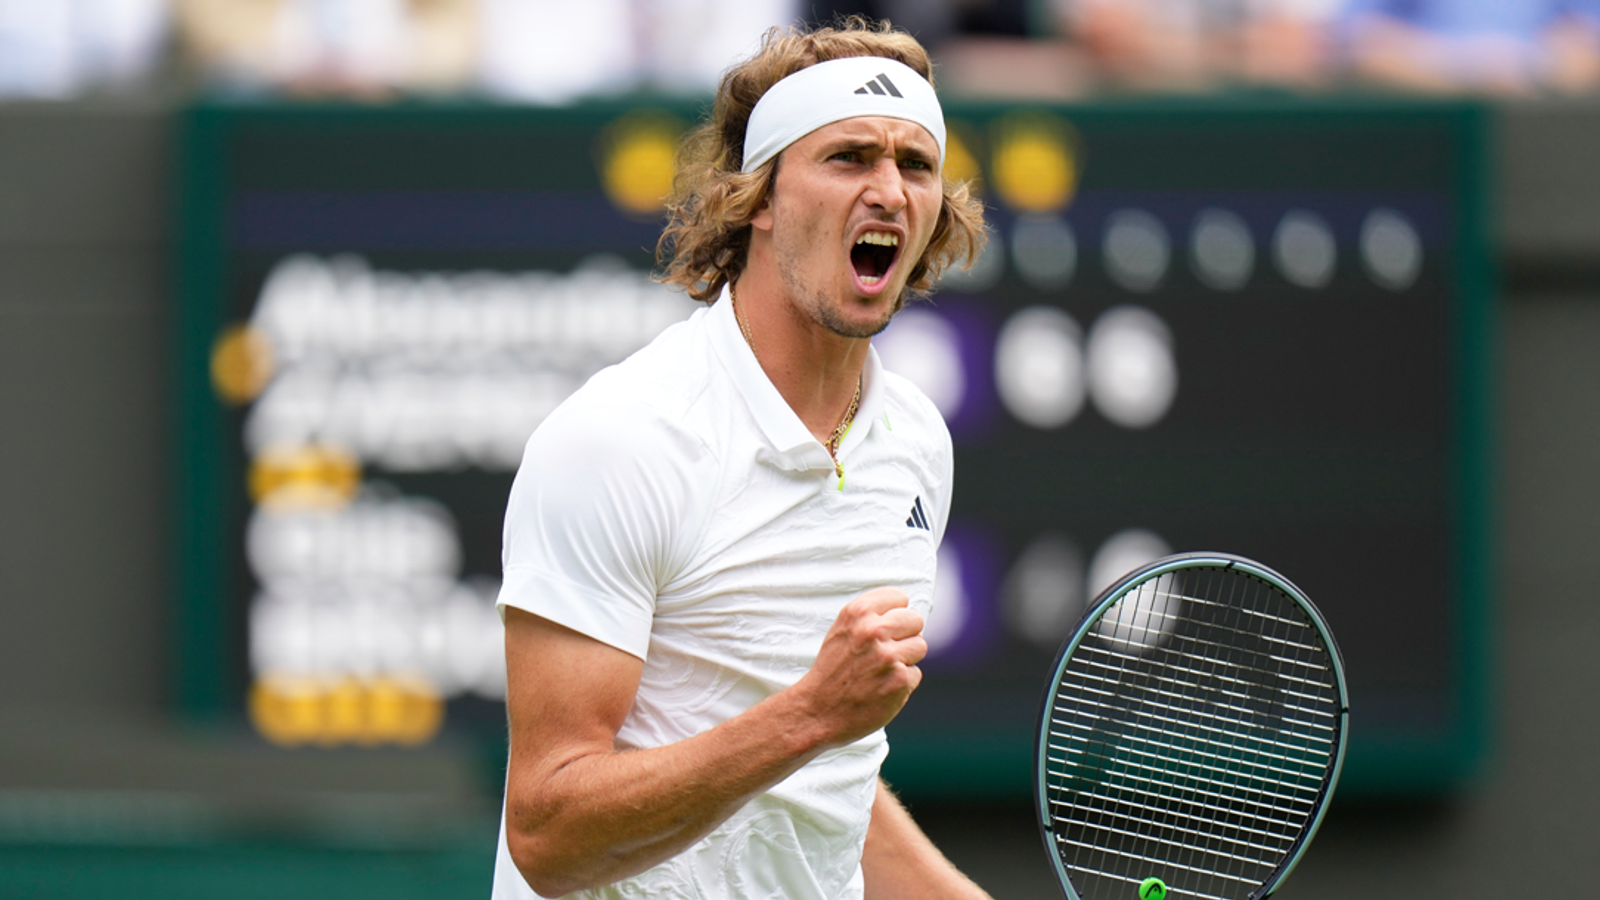 Wimbledon Alexander Zverev besiegt Gijs Brouwer glatt Tennis News Sky Sport